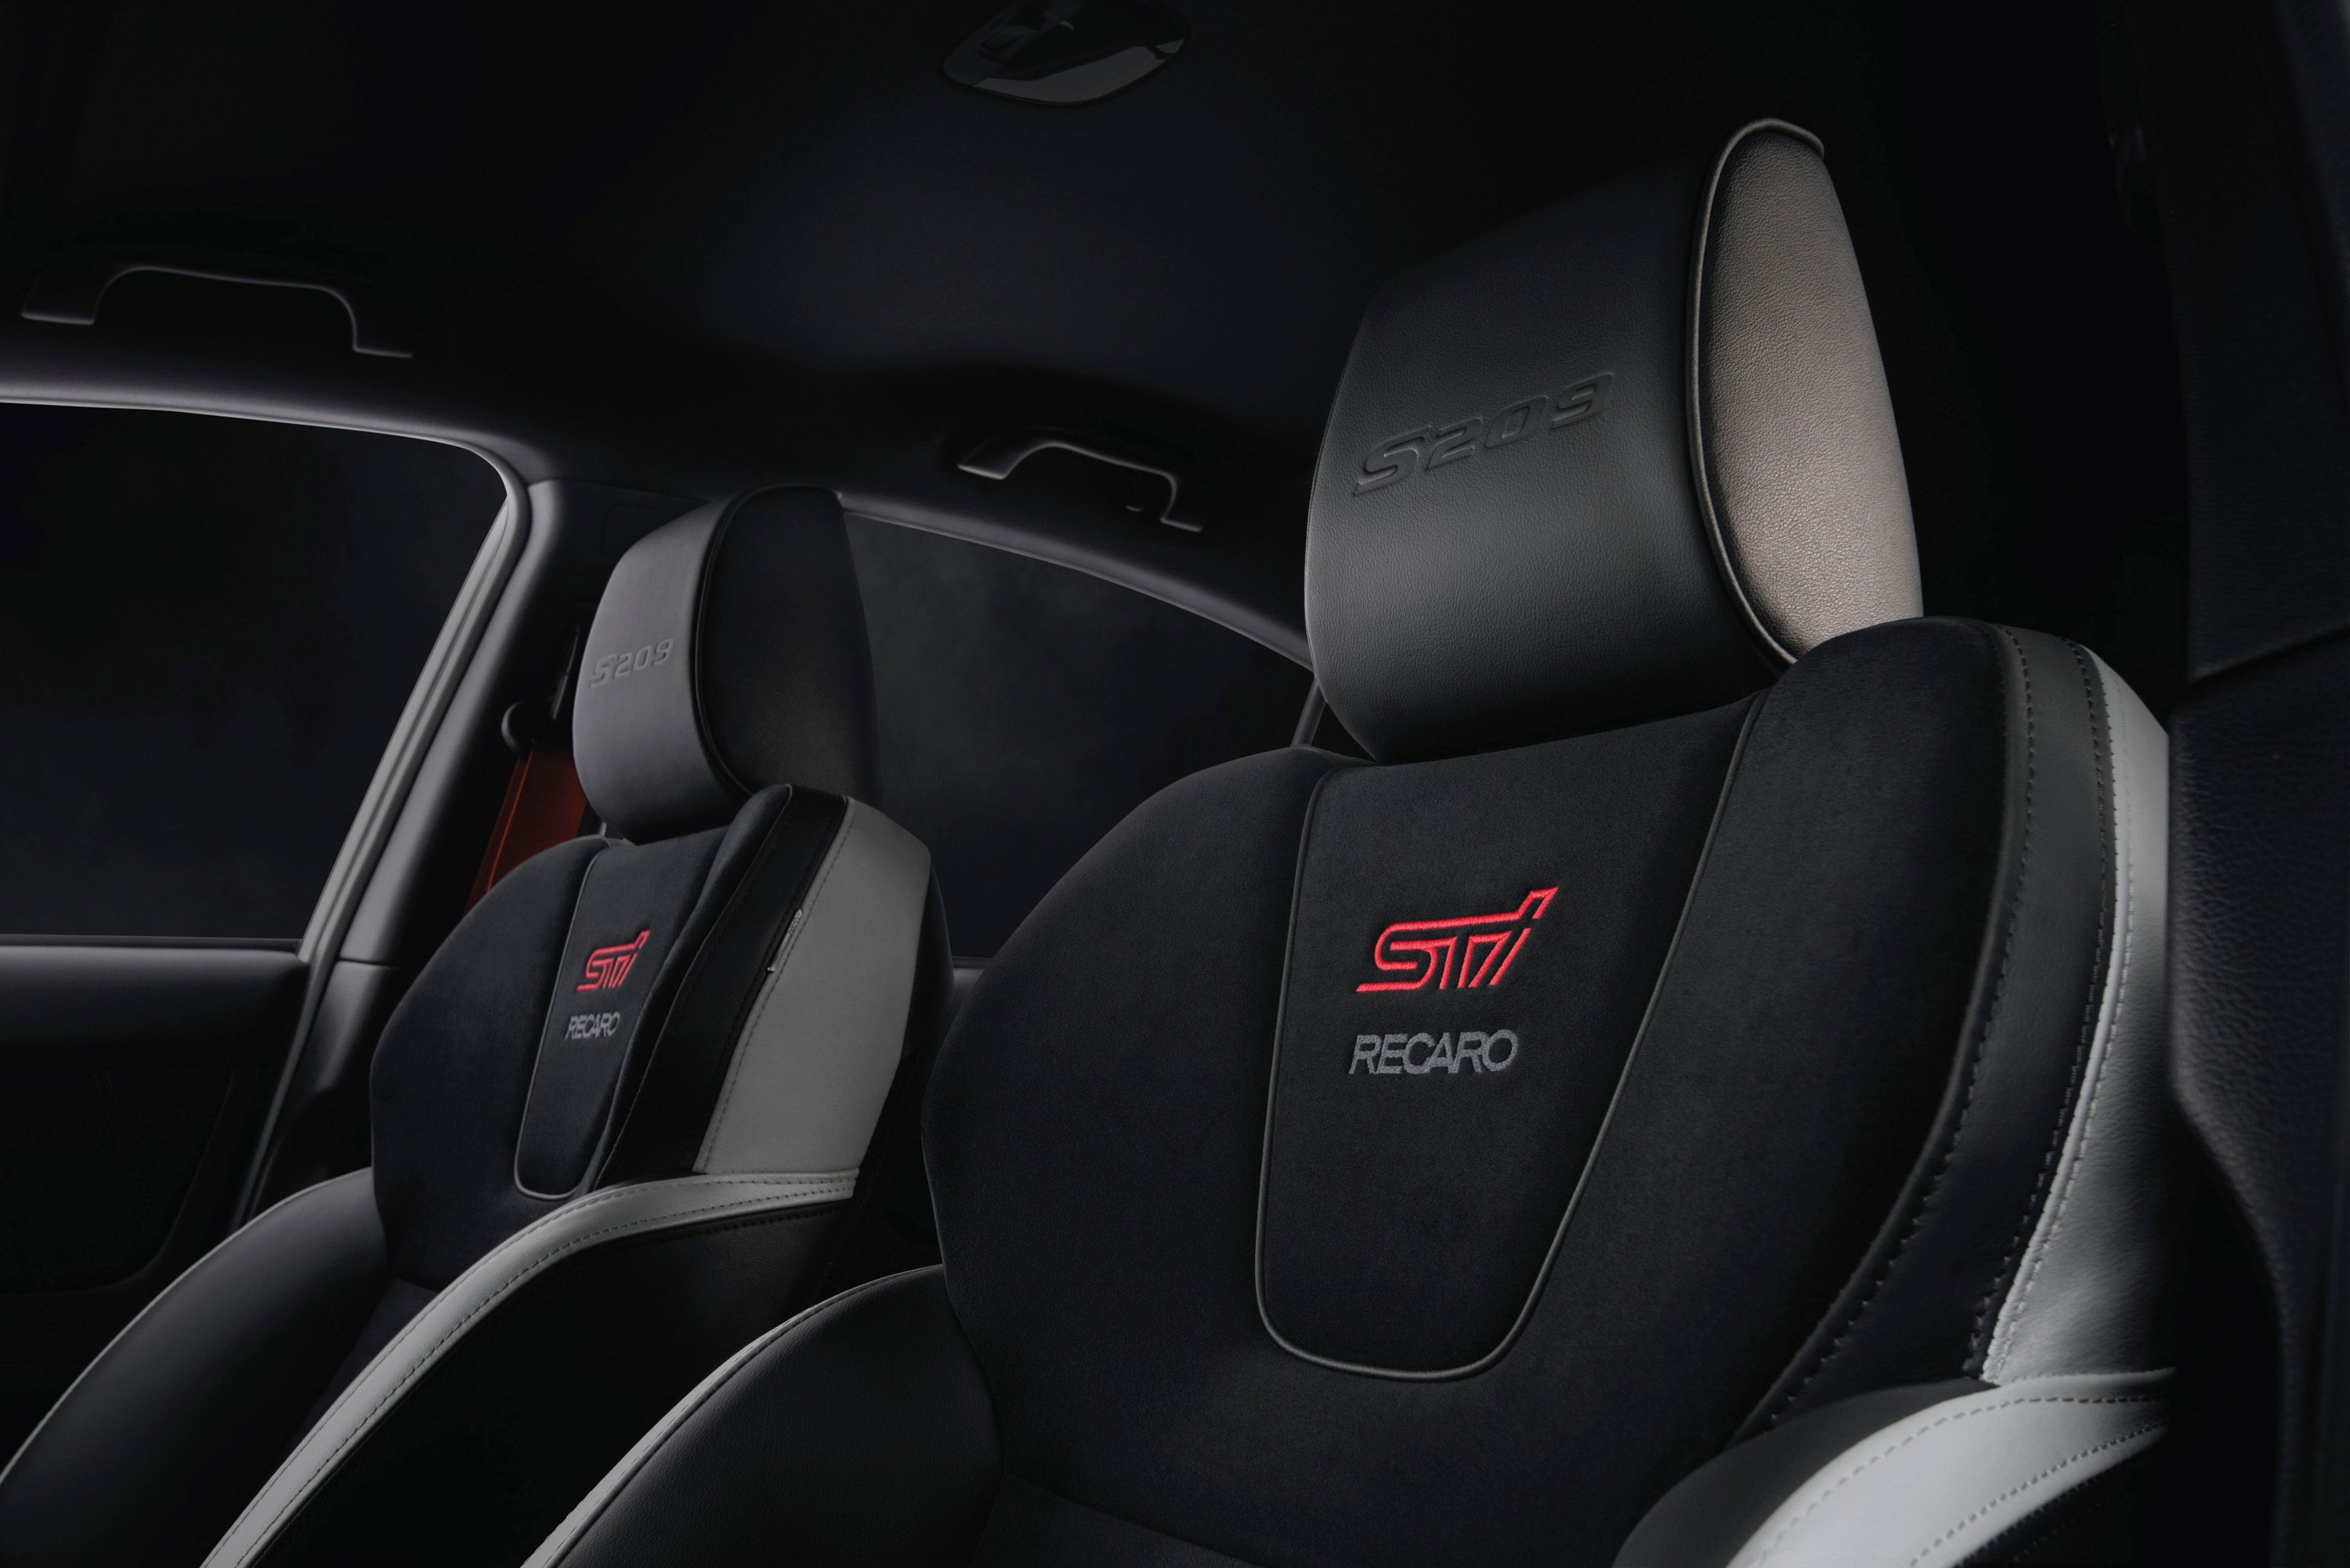 2019 Subaru WRX STI S209